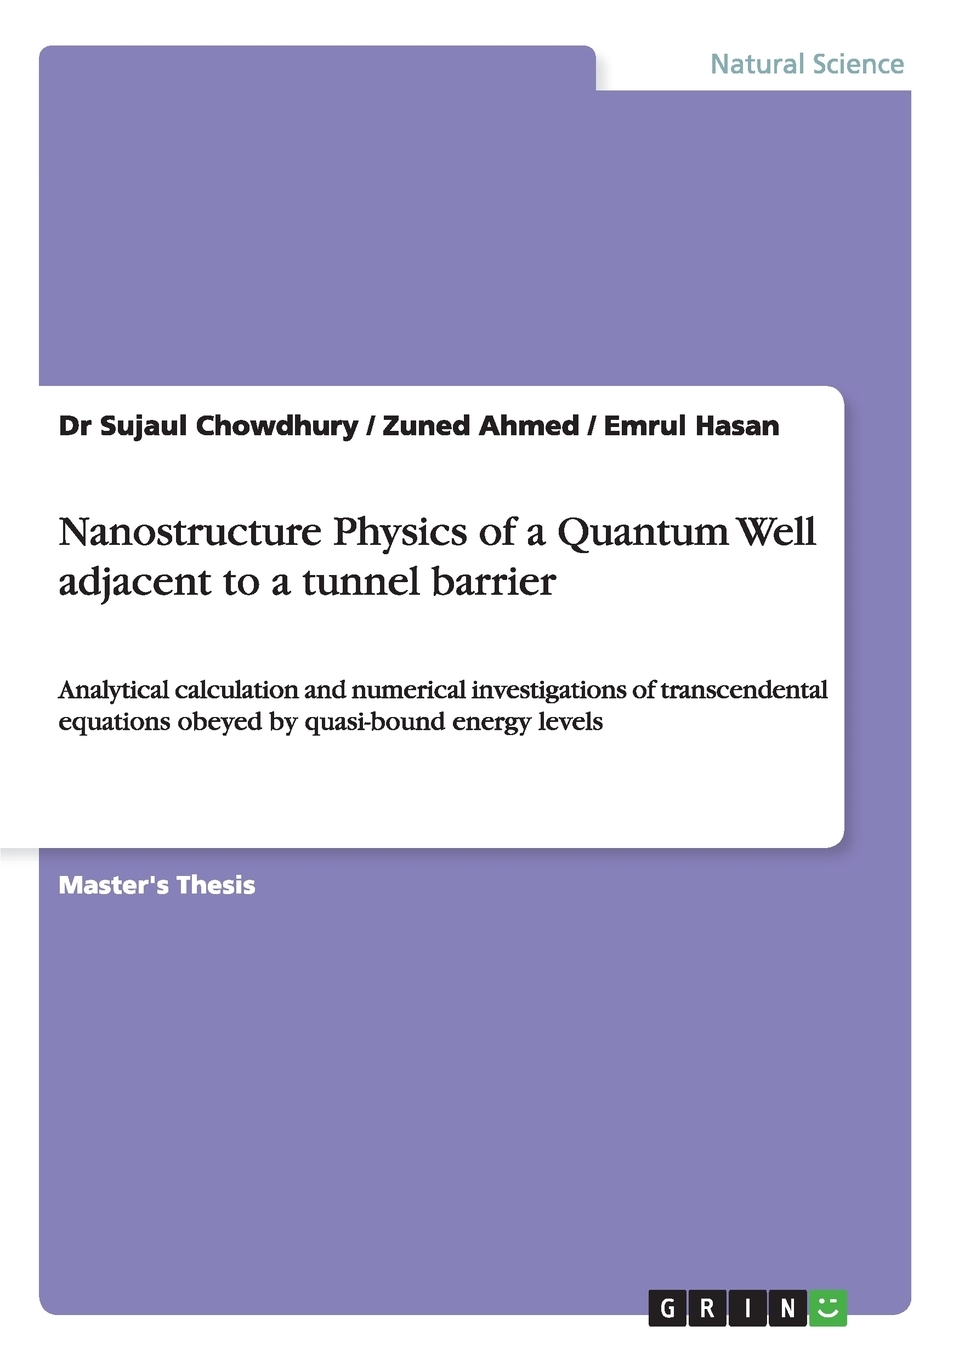 【预售 按需印刷】Nanostructure Physics of a Quantum Well adjacent to a tunnel barrier 书籍/杂志/报纸 科普读物/自然科学/技术类原版书 原图主图